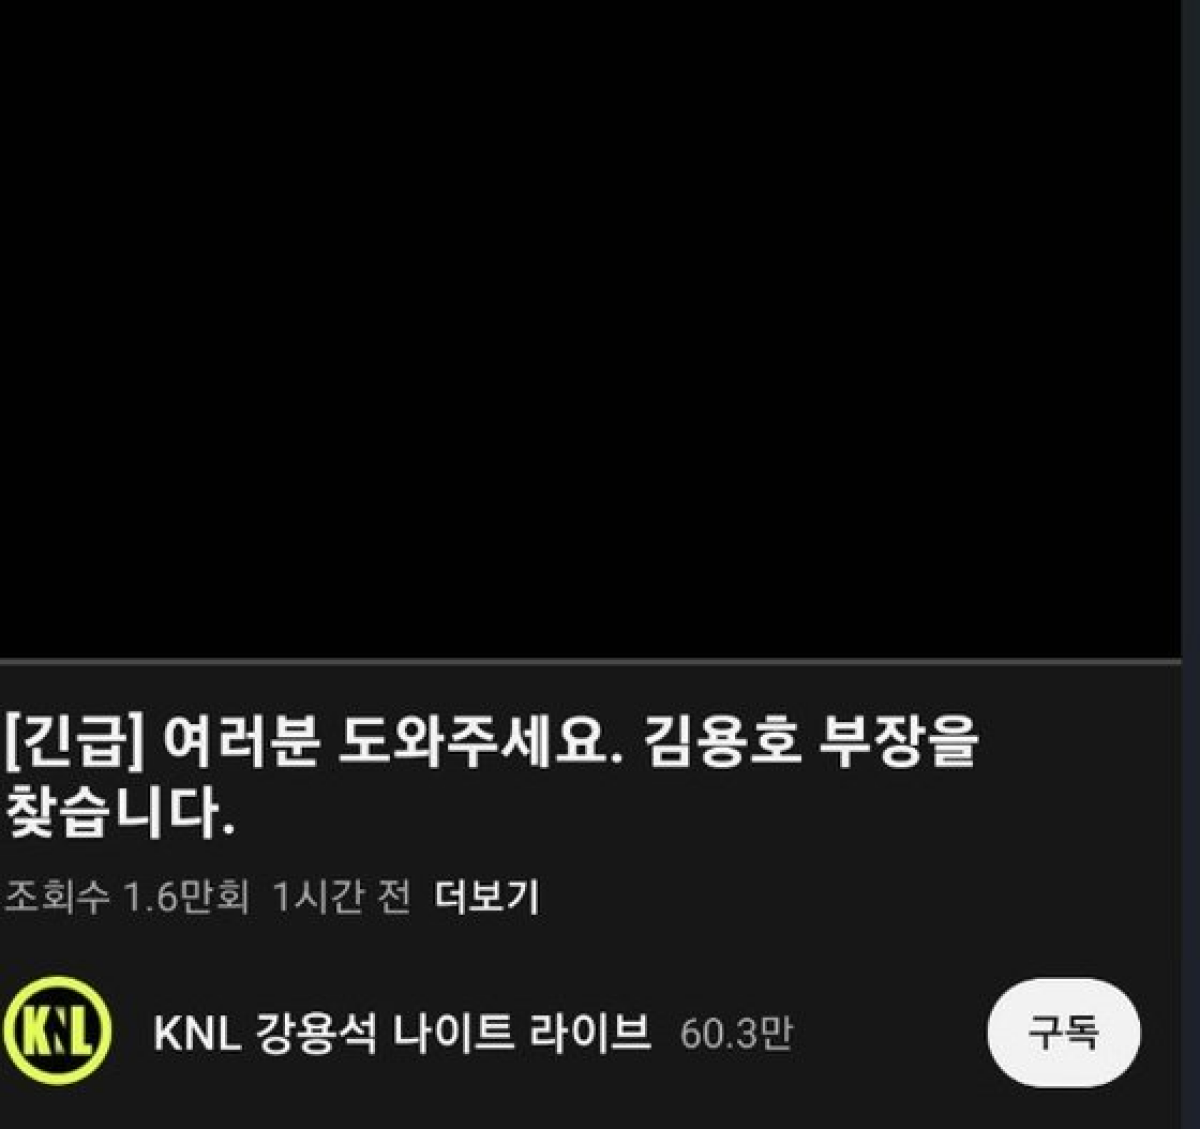 김용호씨가 사망한 채 발견되기 전 마지막으로 올린 유튜브 영상. 이 영상에서 그는 "이제 사라지겠다"는 취지의 말을 남겼다. 유튜브 캡쳐